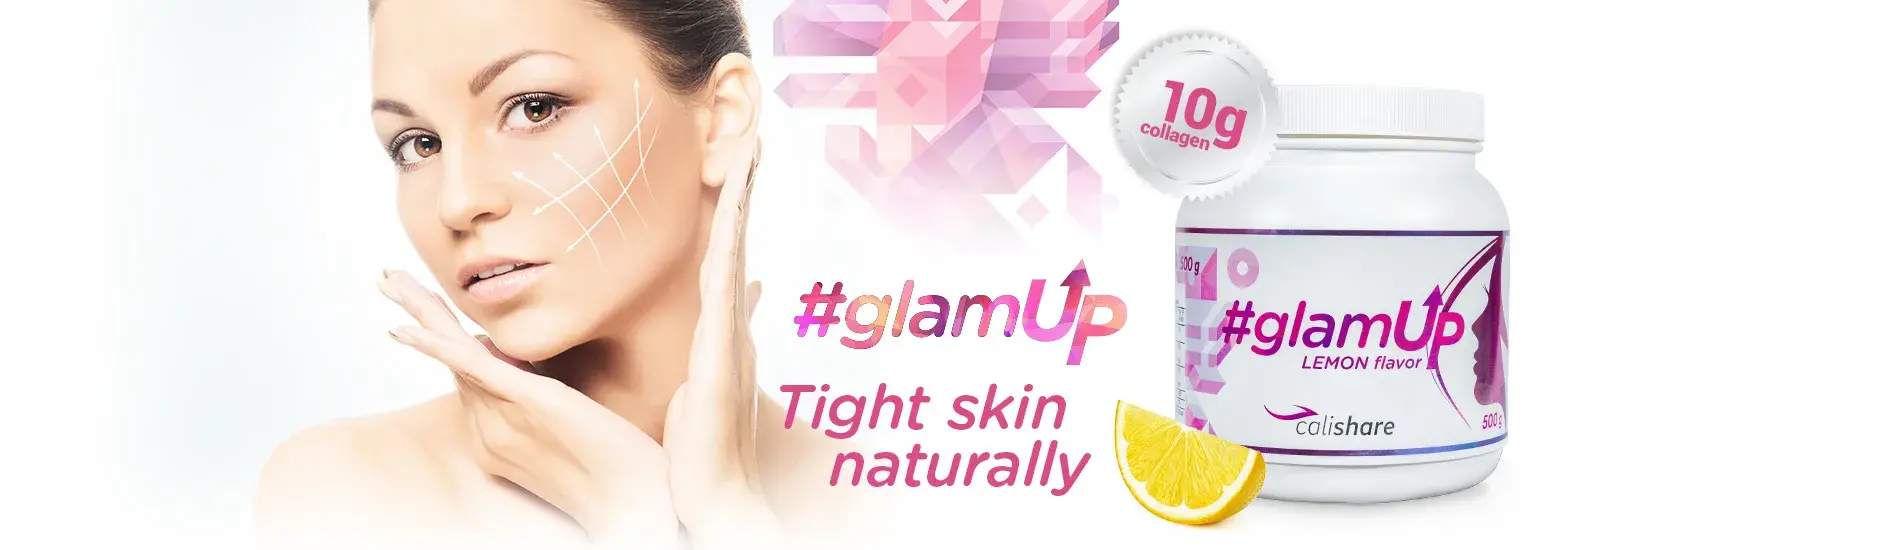 #Glamup - Tight skin naturally